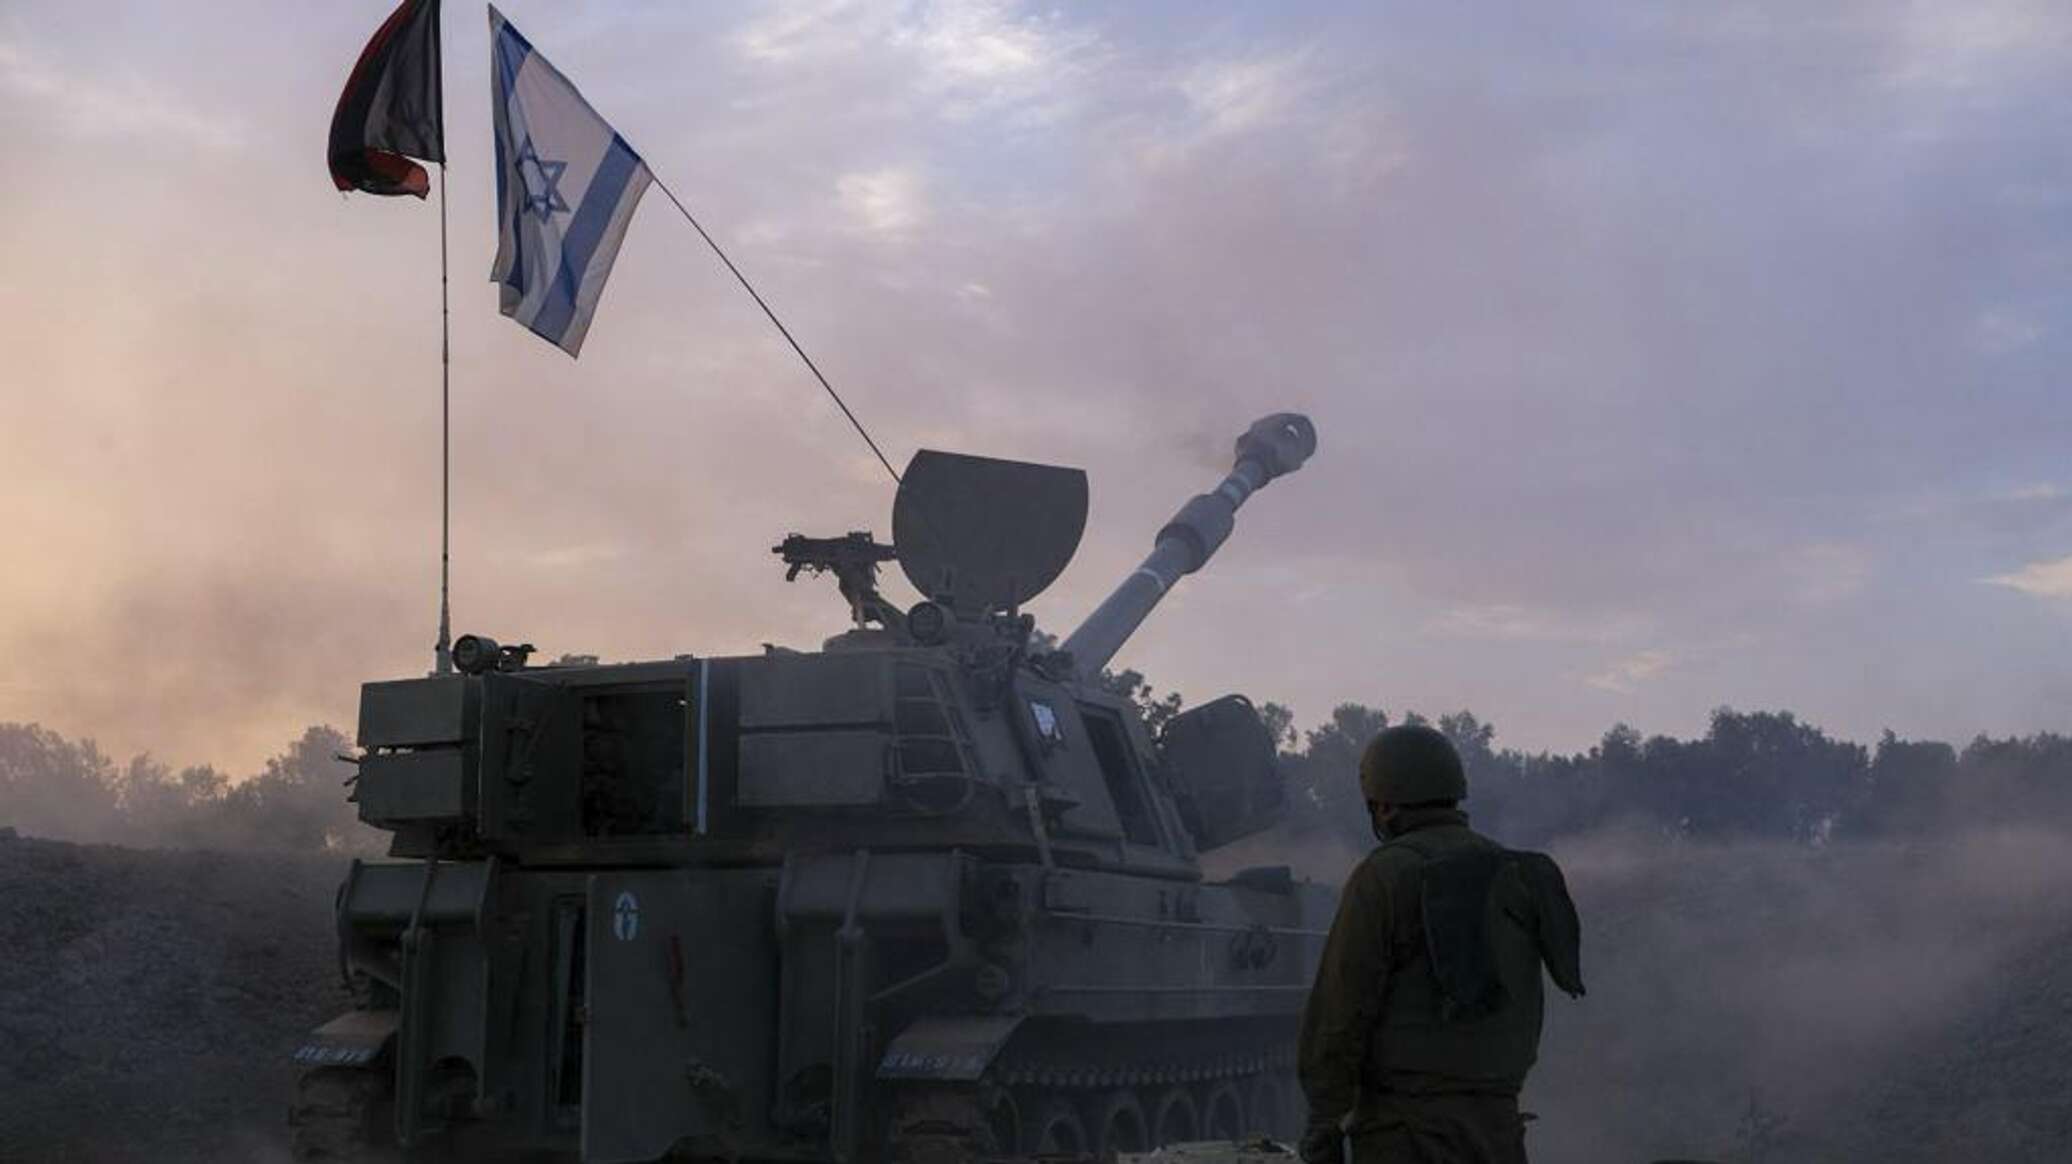 مسؤول أمني إسرائيلي: الجيش بدأ يقتصد في استخدام الأسلحة خلال حرب غزة